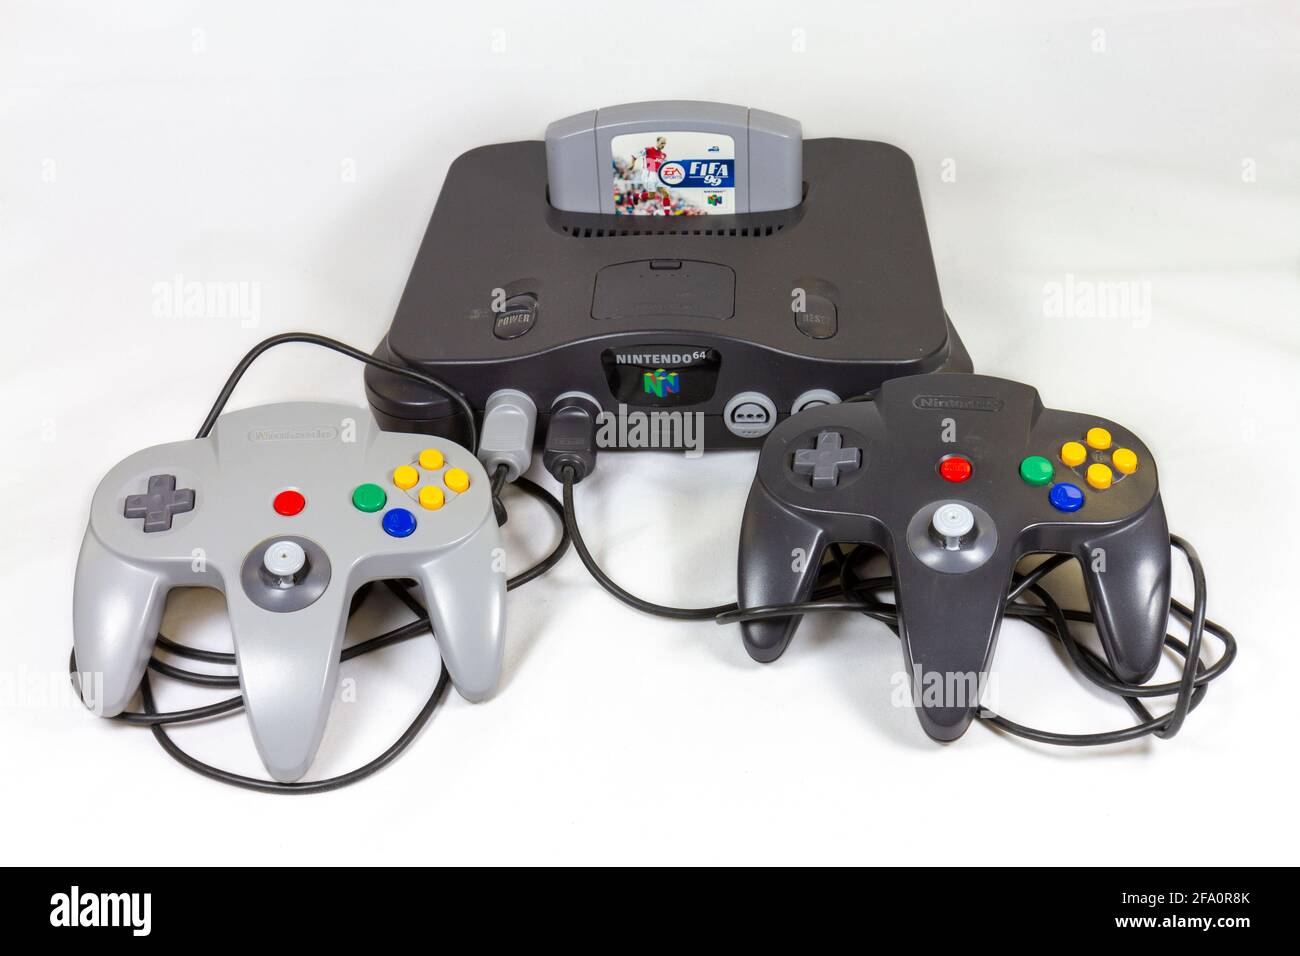 Il gioco FIFA'99 in una console di videogiochi Nintendo 64 o N64, una  console di videogiochi di quinta generazione lanciata nel 1996 in Giappone  Foto stock - Alamy